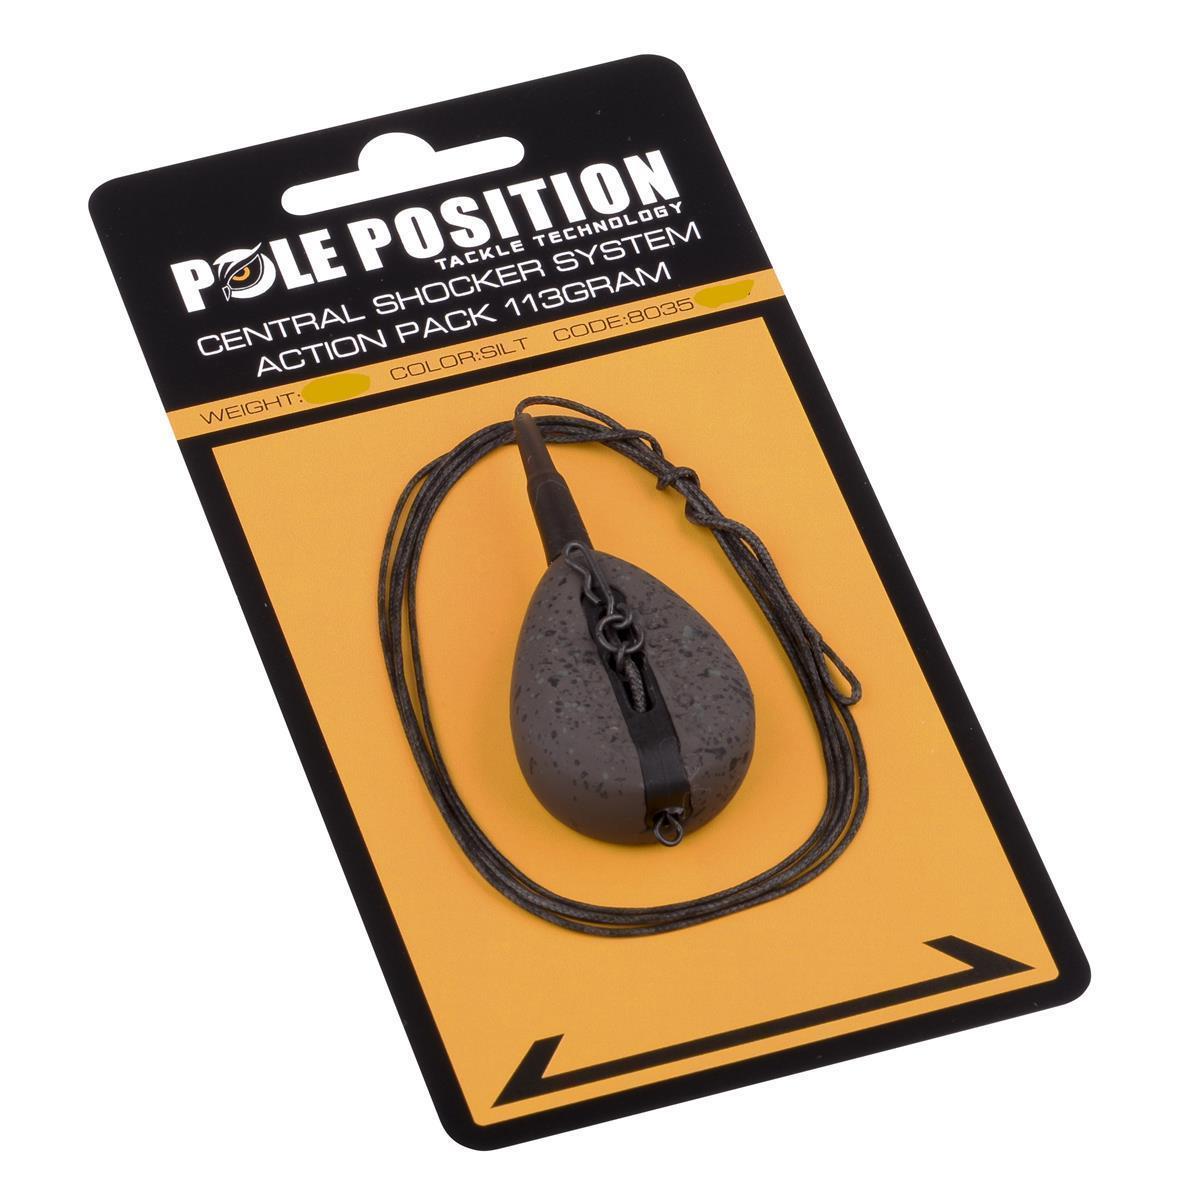 Pole Position Central Shocker System Action Pack; Slit; 3.5 oz (99 gr.)